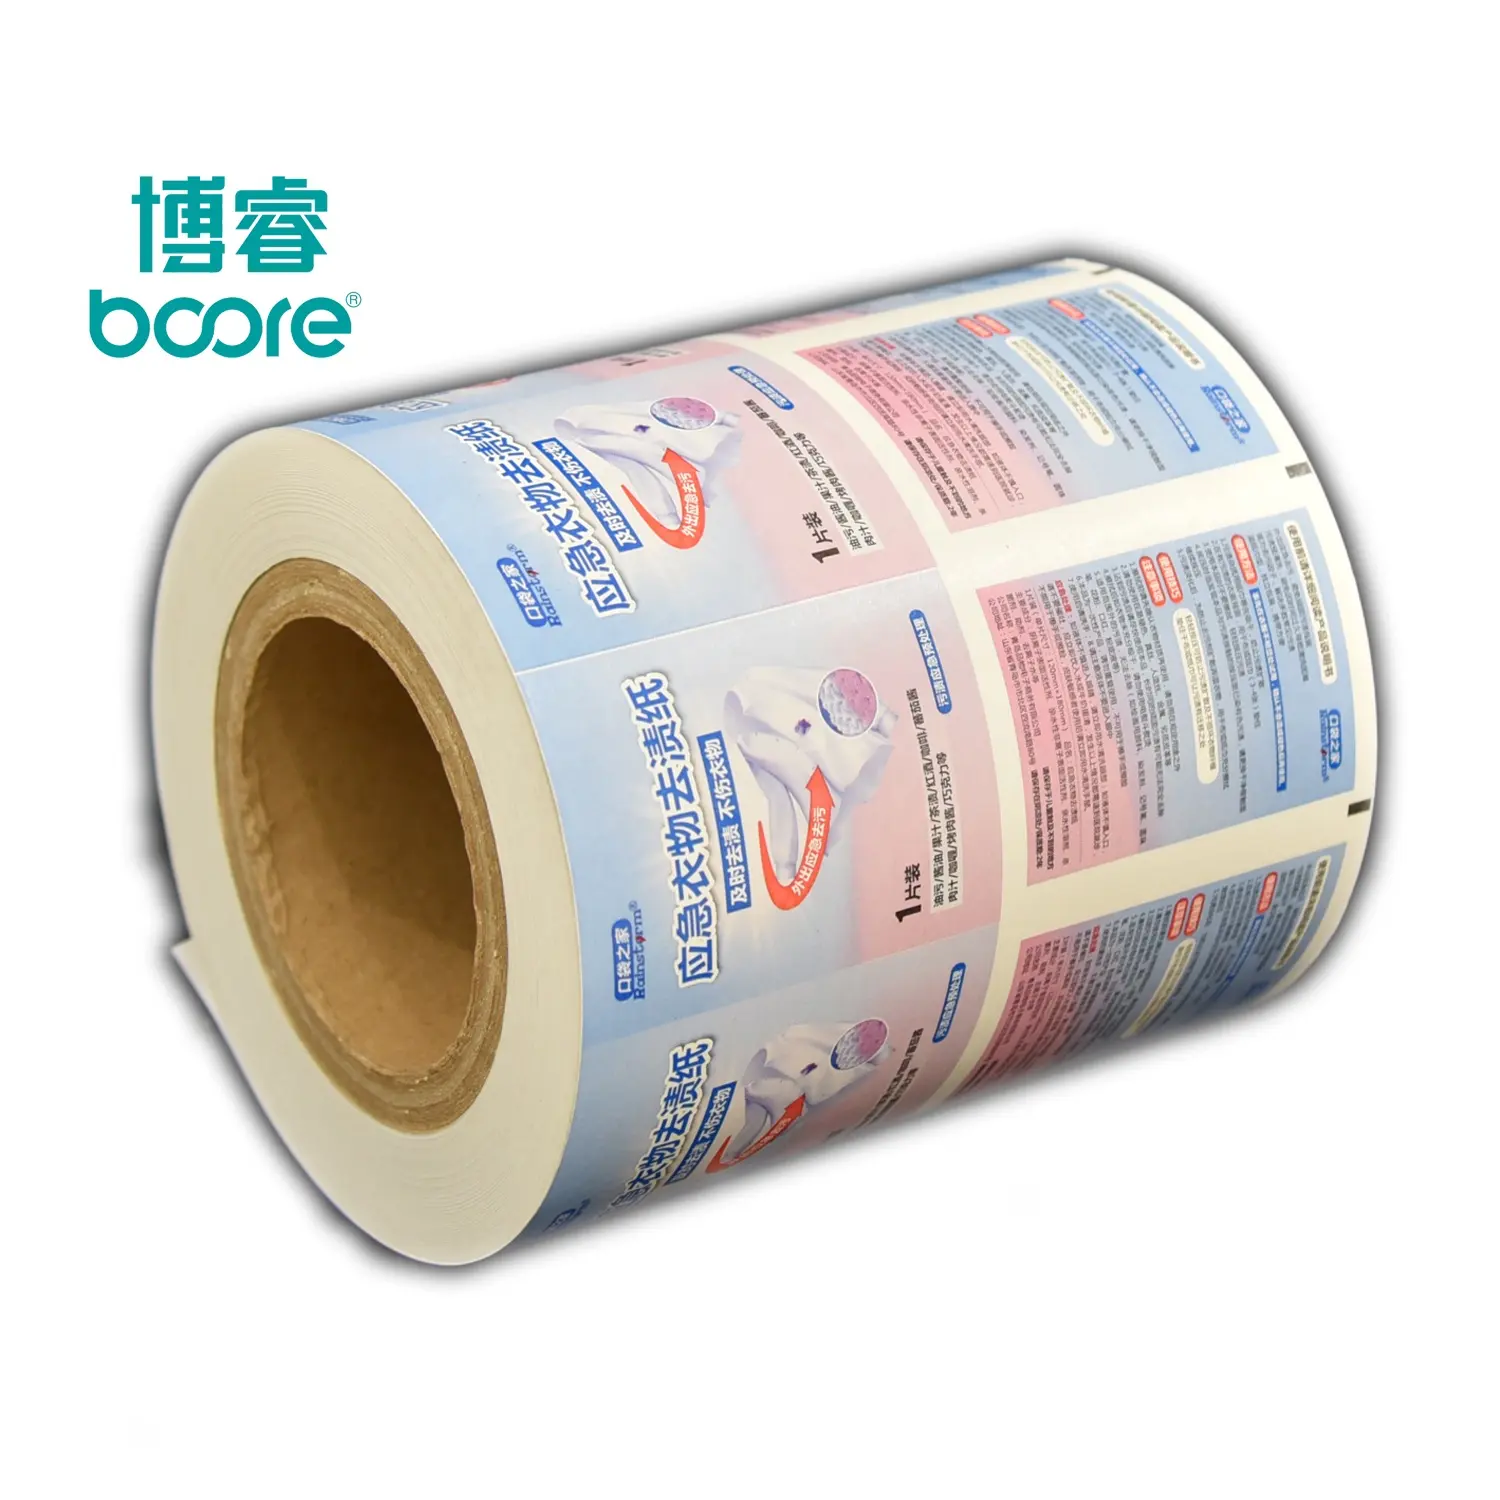 BOORECustom printed plastic flexible potato chips packaging film roll rollstock food grade for sachet